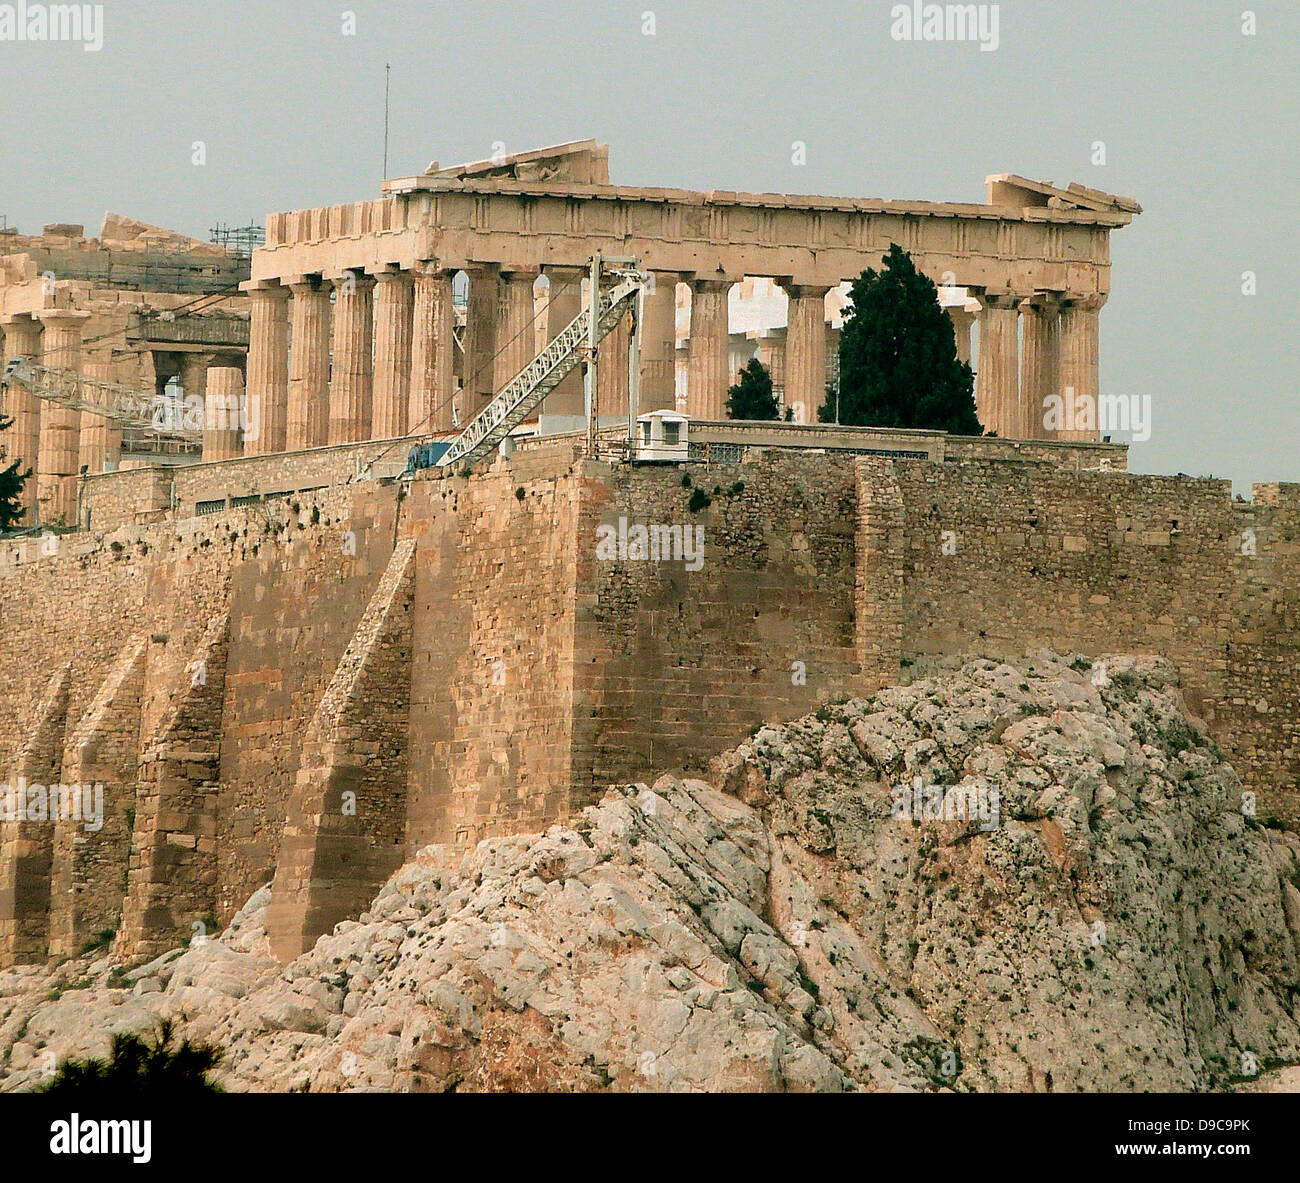 L'Acropoli di Atene è un antica cittadella situata su un alto sperone roccioso sopra la città di Atene e contenente i resti di numerosi edifici antichi di grande architettura e significato storico, il più celebre è il Partenone. Foto Stock